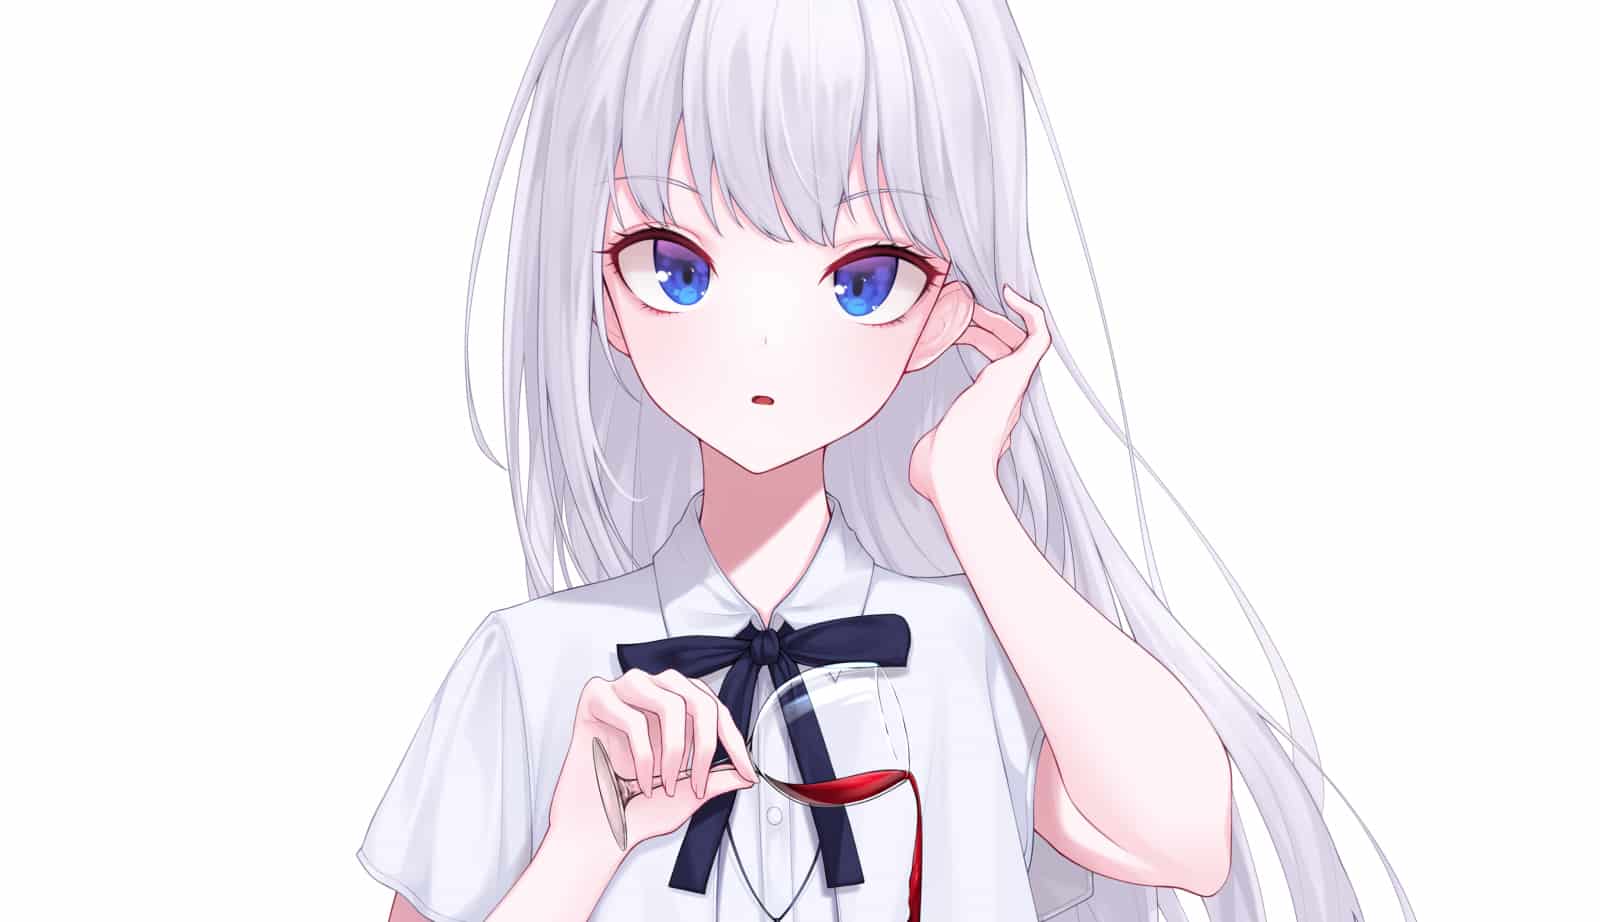 101 hình anime nữ tóc trắng đẹp chất lượng cao tải miễn phí